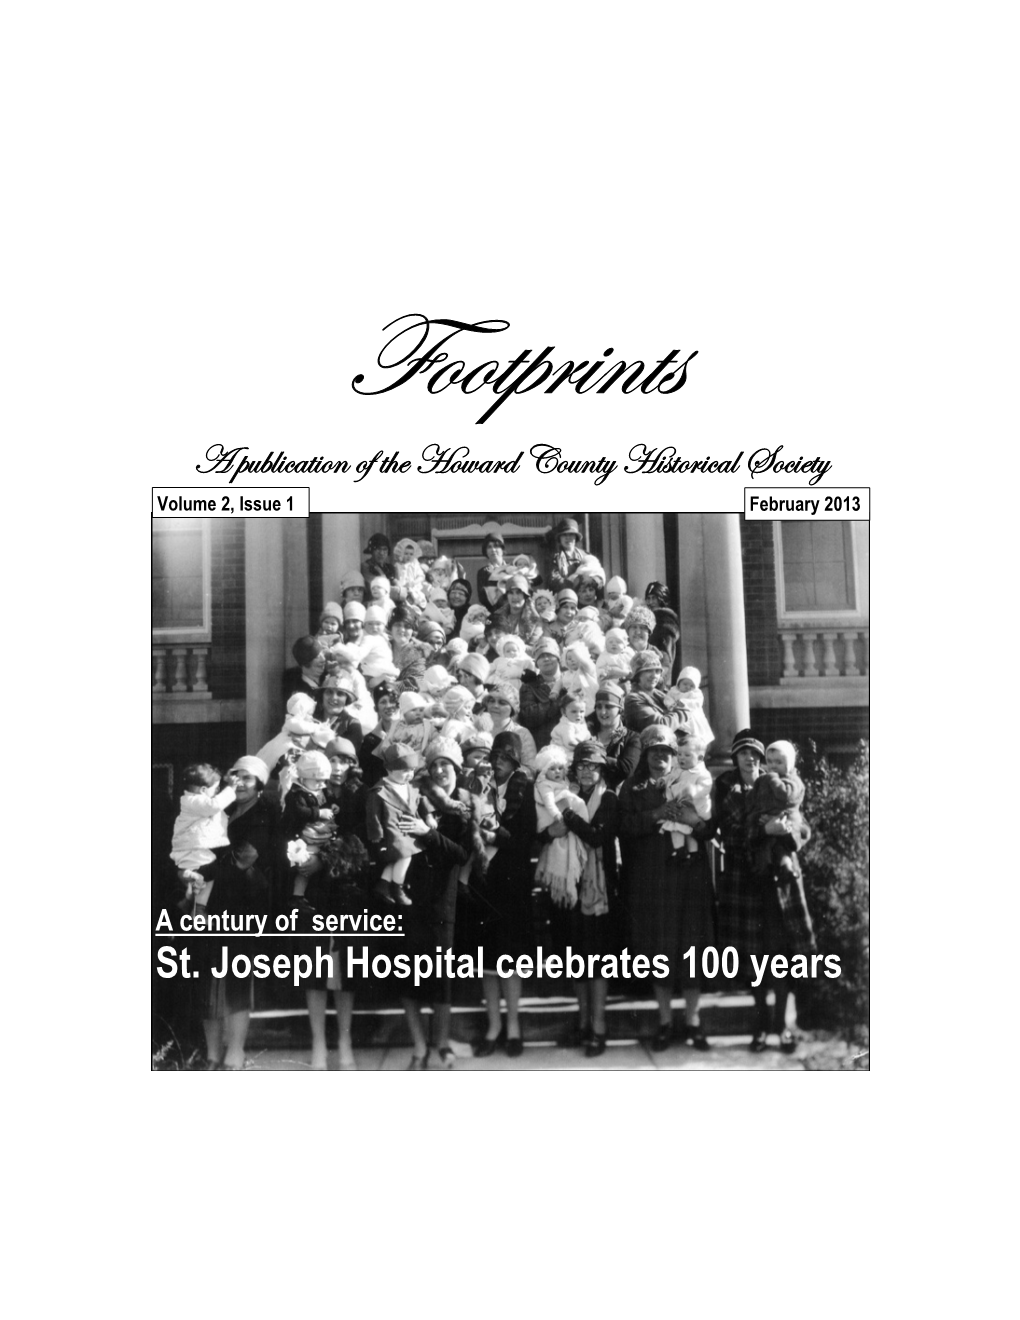 St. Joseph Hospital Celebrates 100 Years